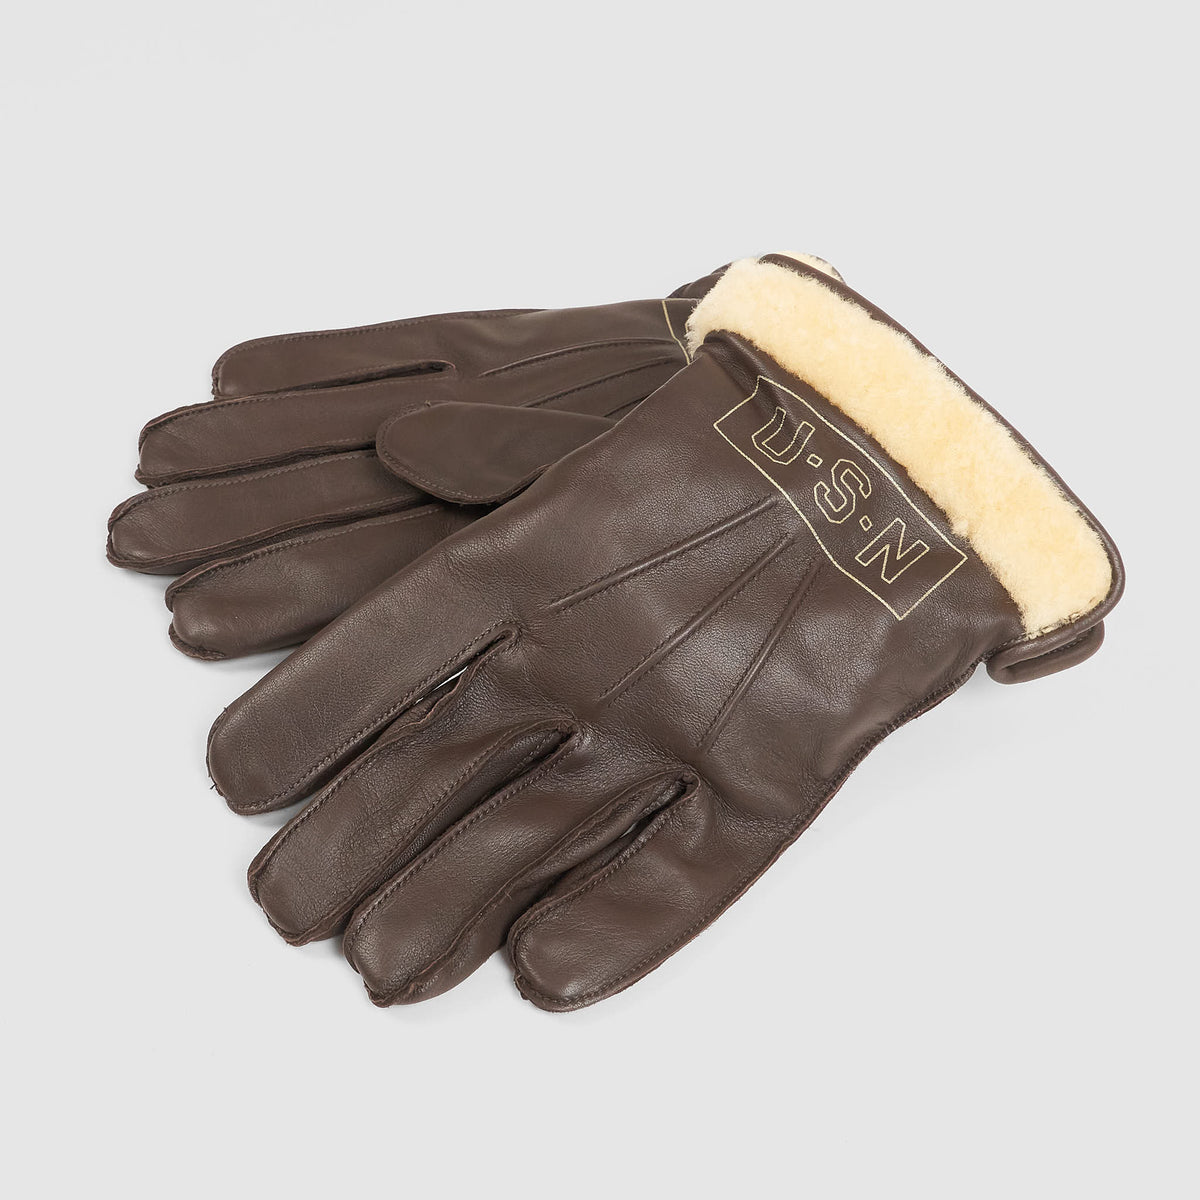 Eastman USN Gloves